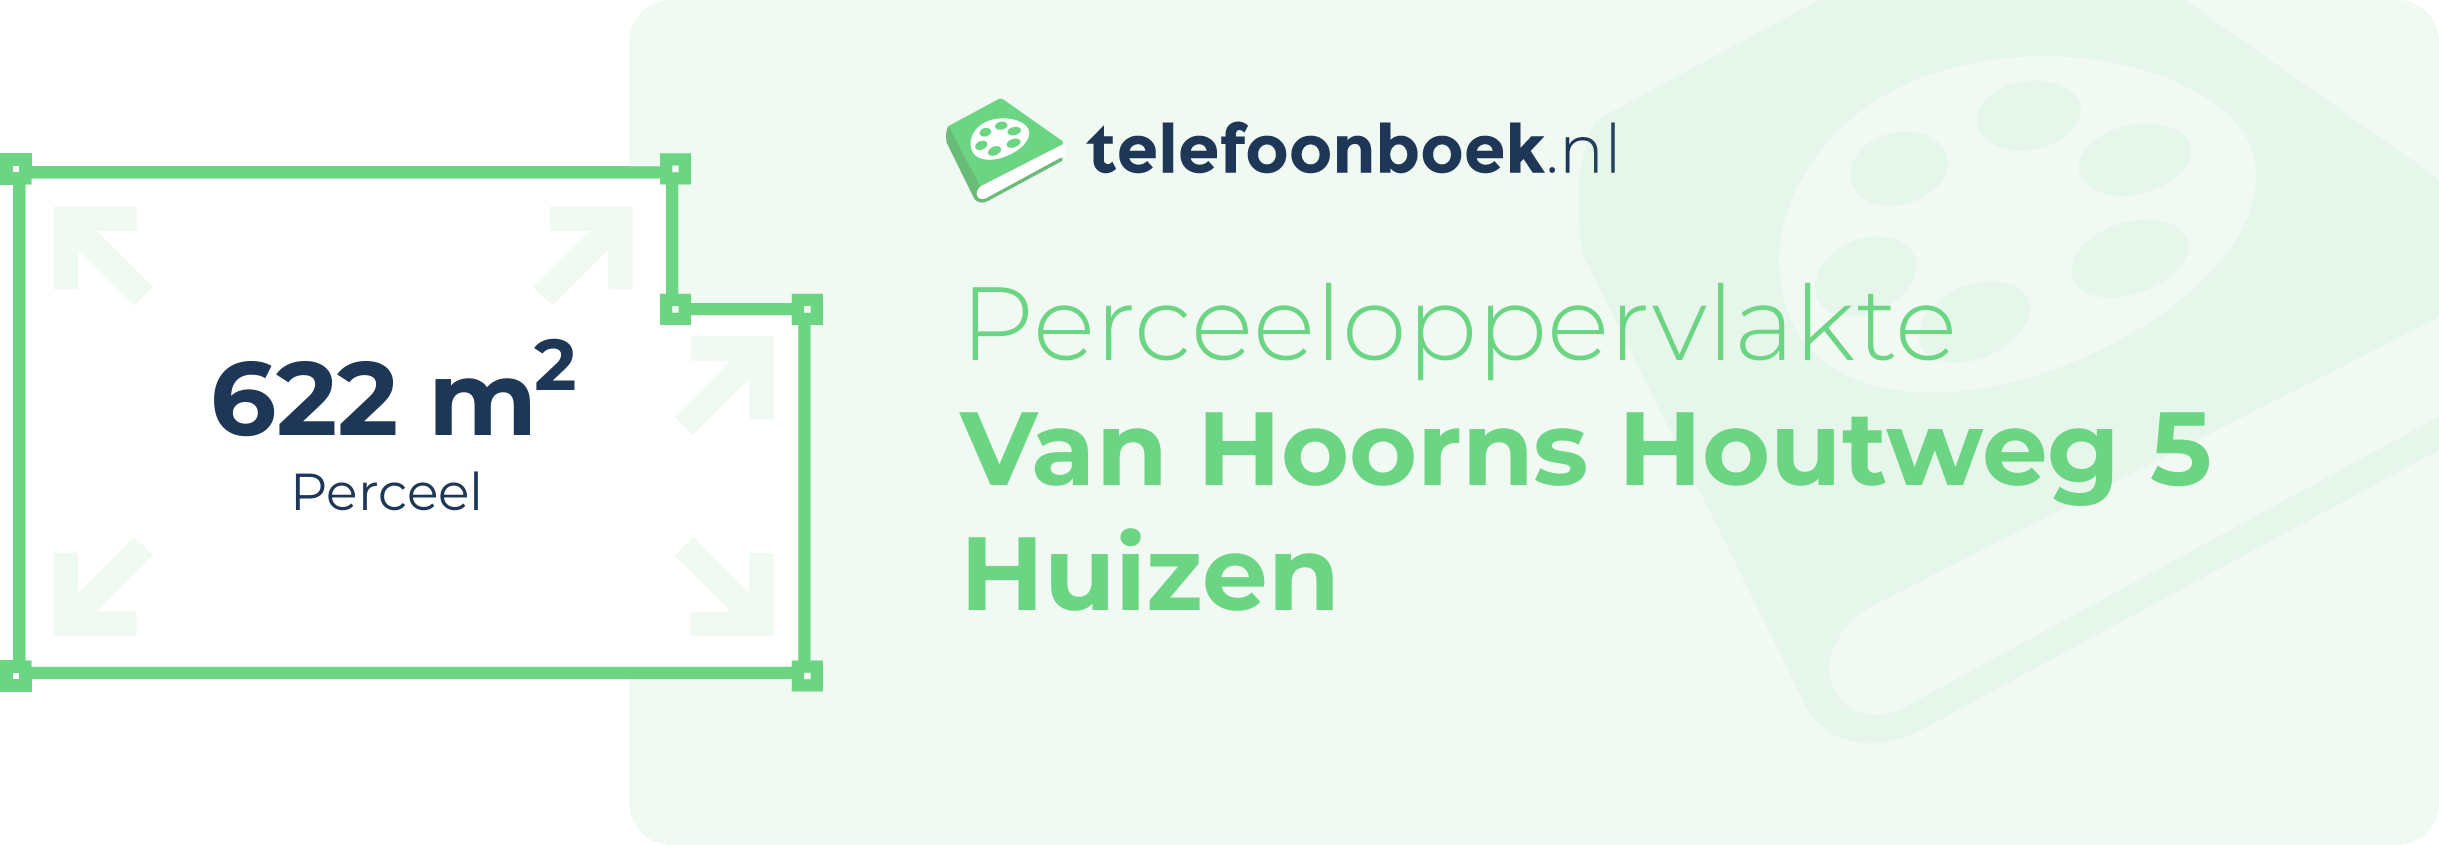 Perceeloppervlakte Van Hoorns Houtweg 5 Huizen